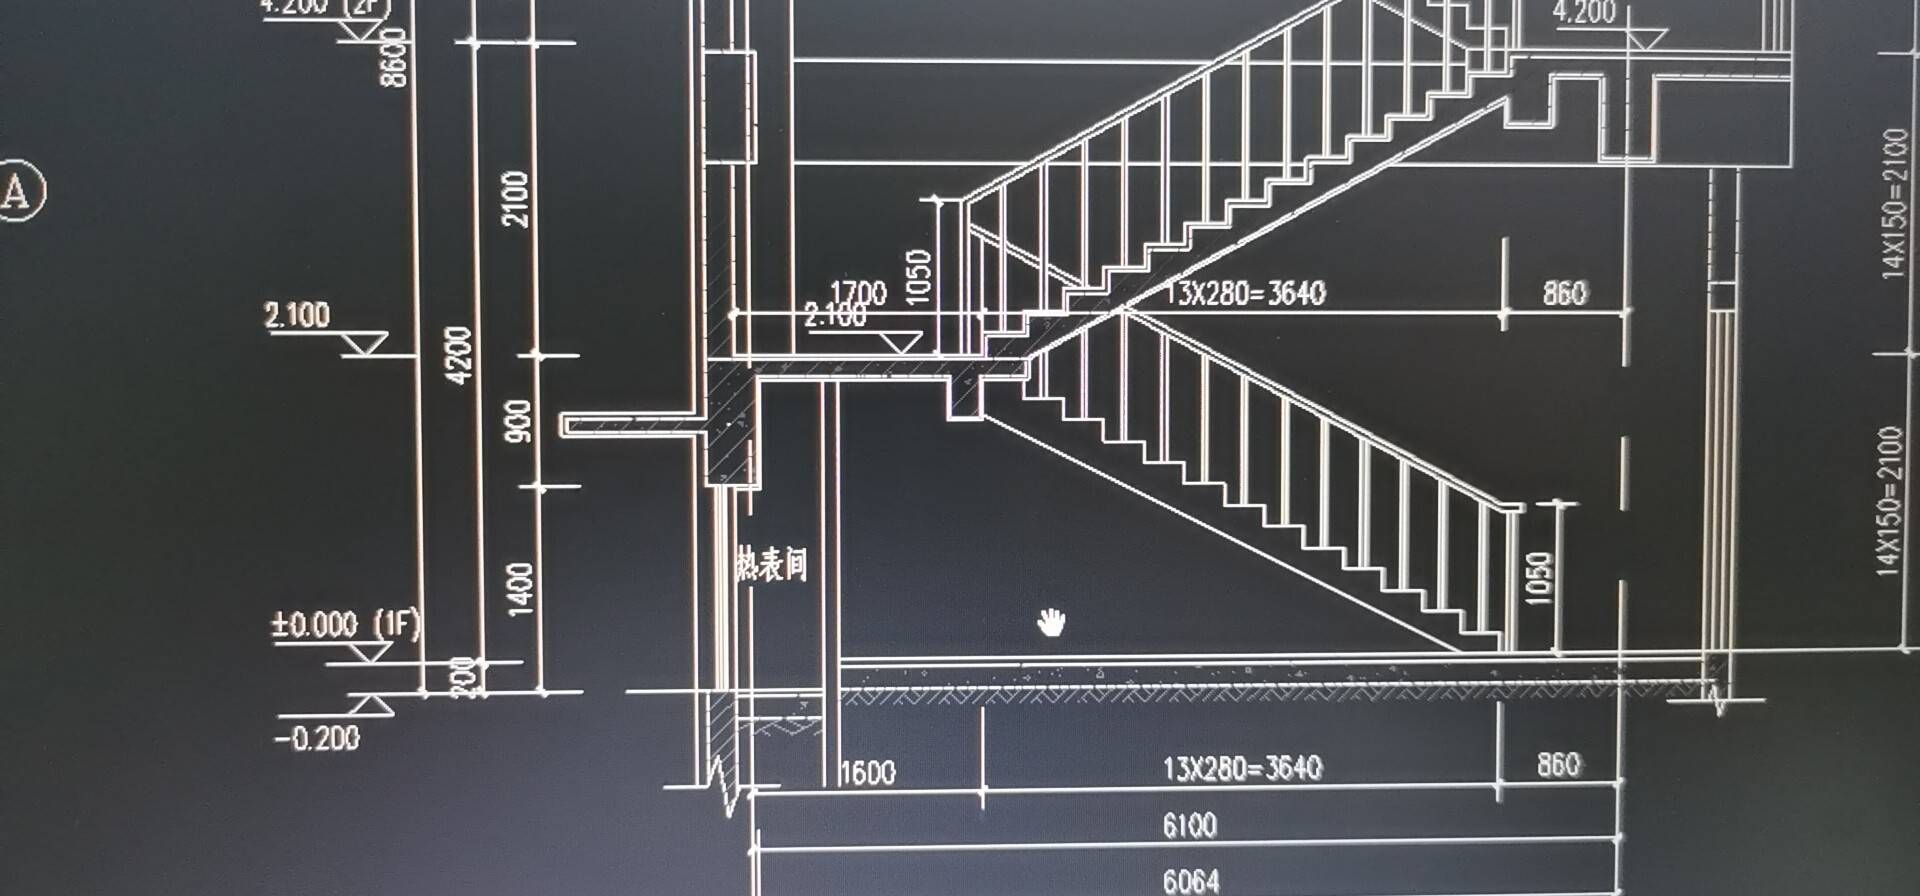 老师，楼梯平台与热表间屋顶是同一个，那么楼梯平台用什么布置？